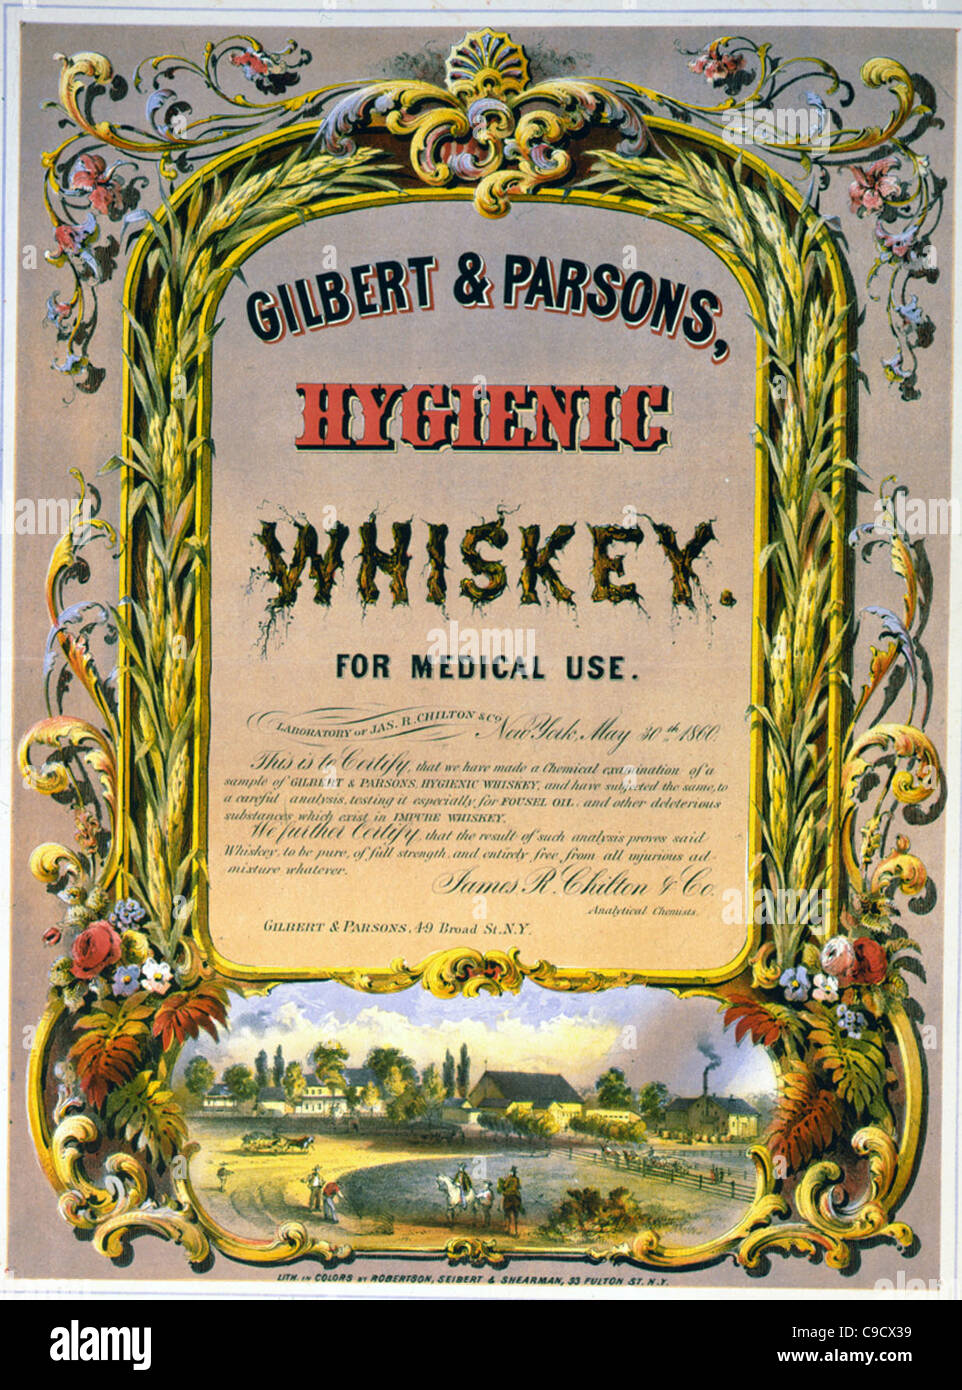 Gilbert & Parsons, whiskey hygiénique à usage médical Publicité de frontière, scène de ferme, et de la distillerie, vers 1860 Banque D'Images